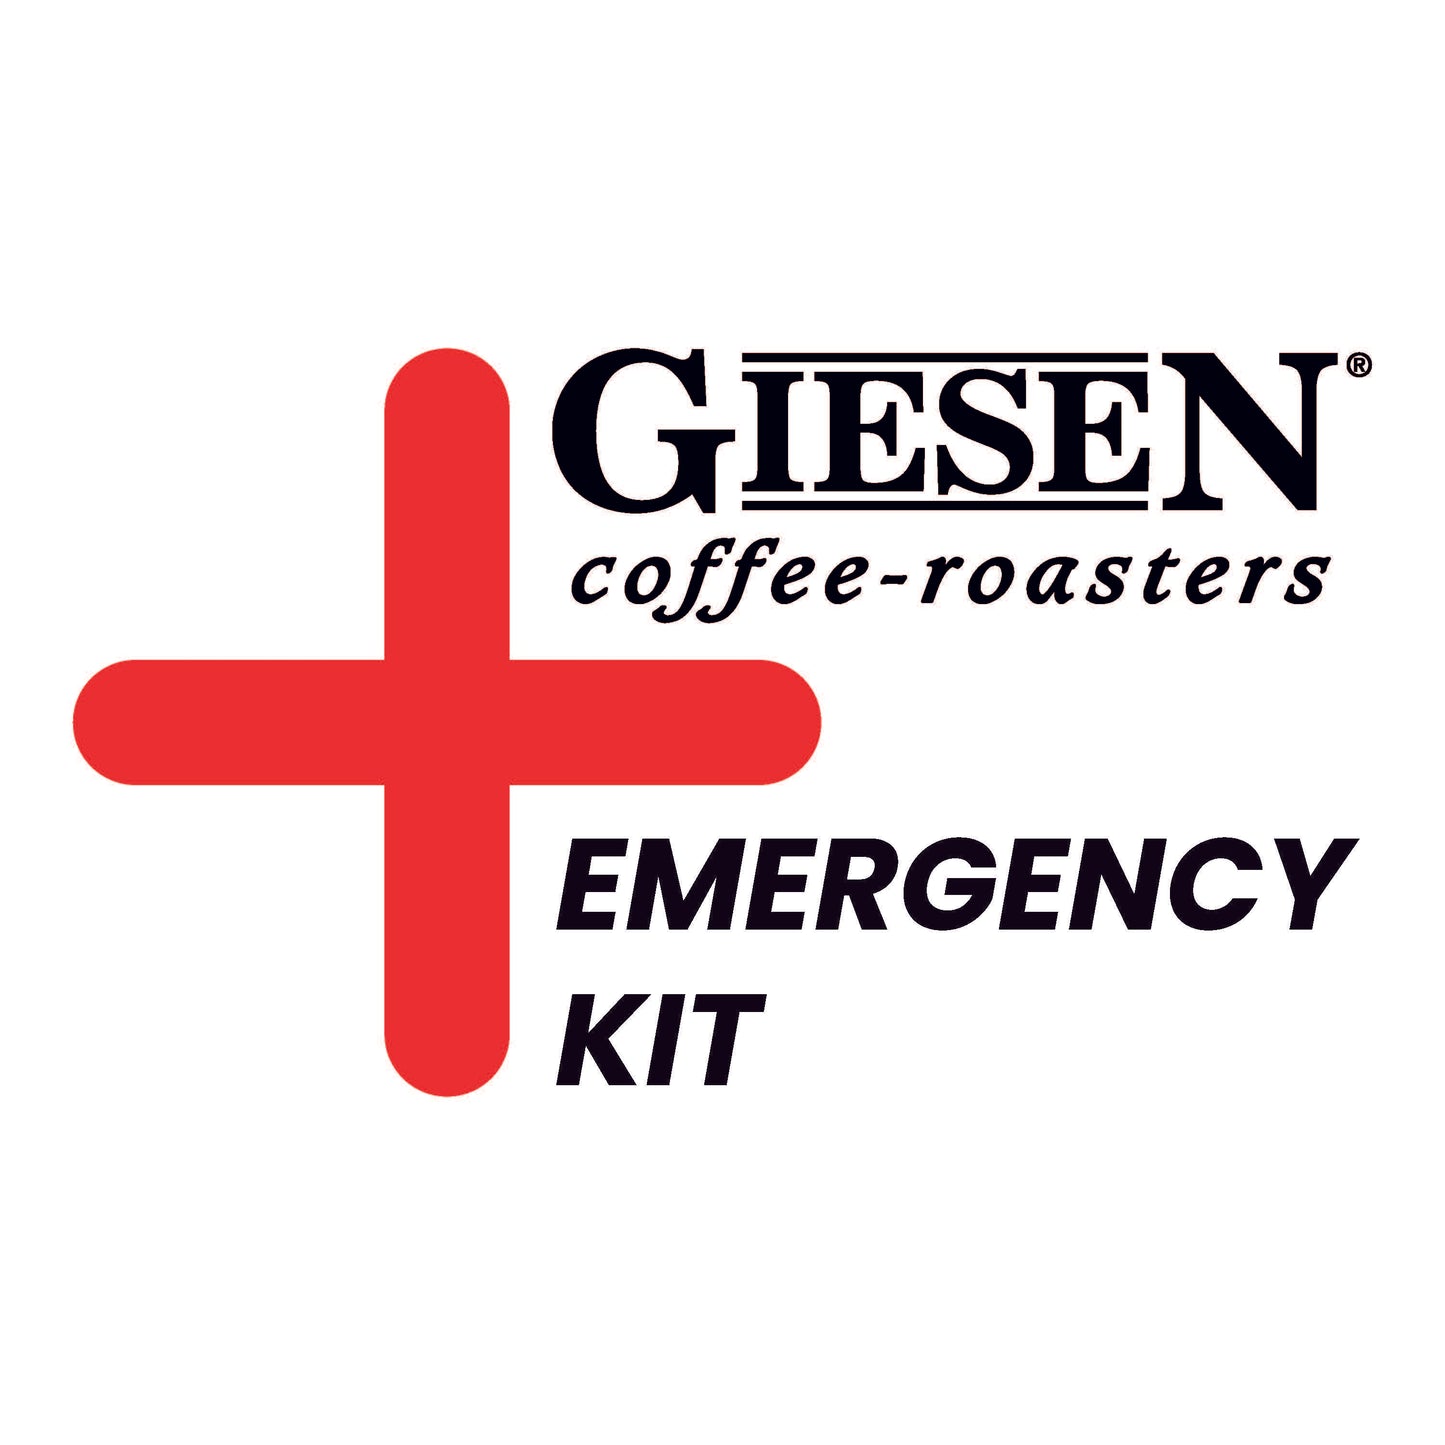 Emergency kit - W30A PRO series / CE version - propane gas